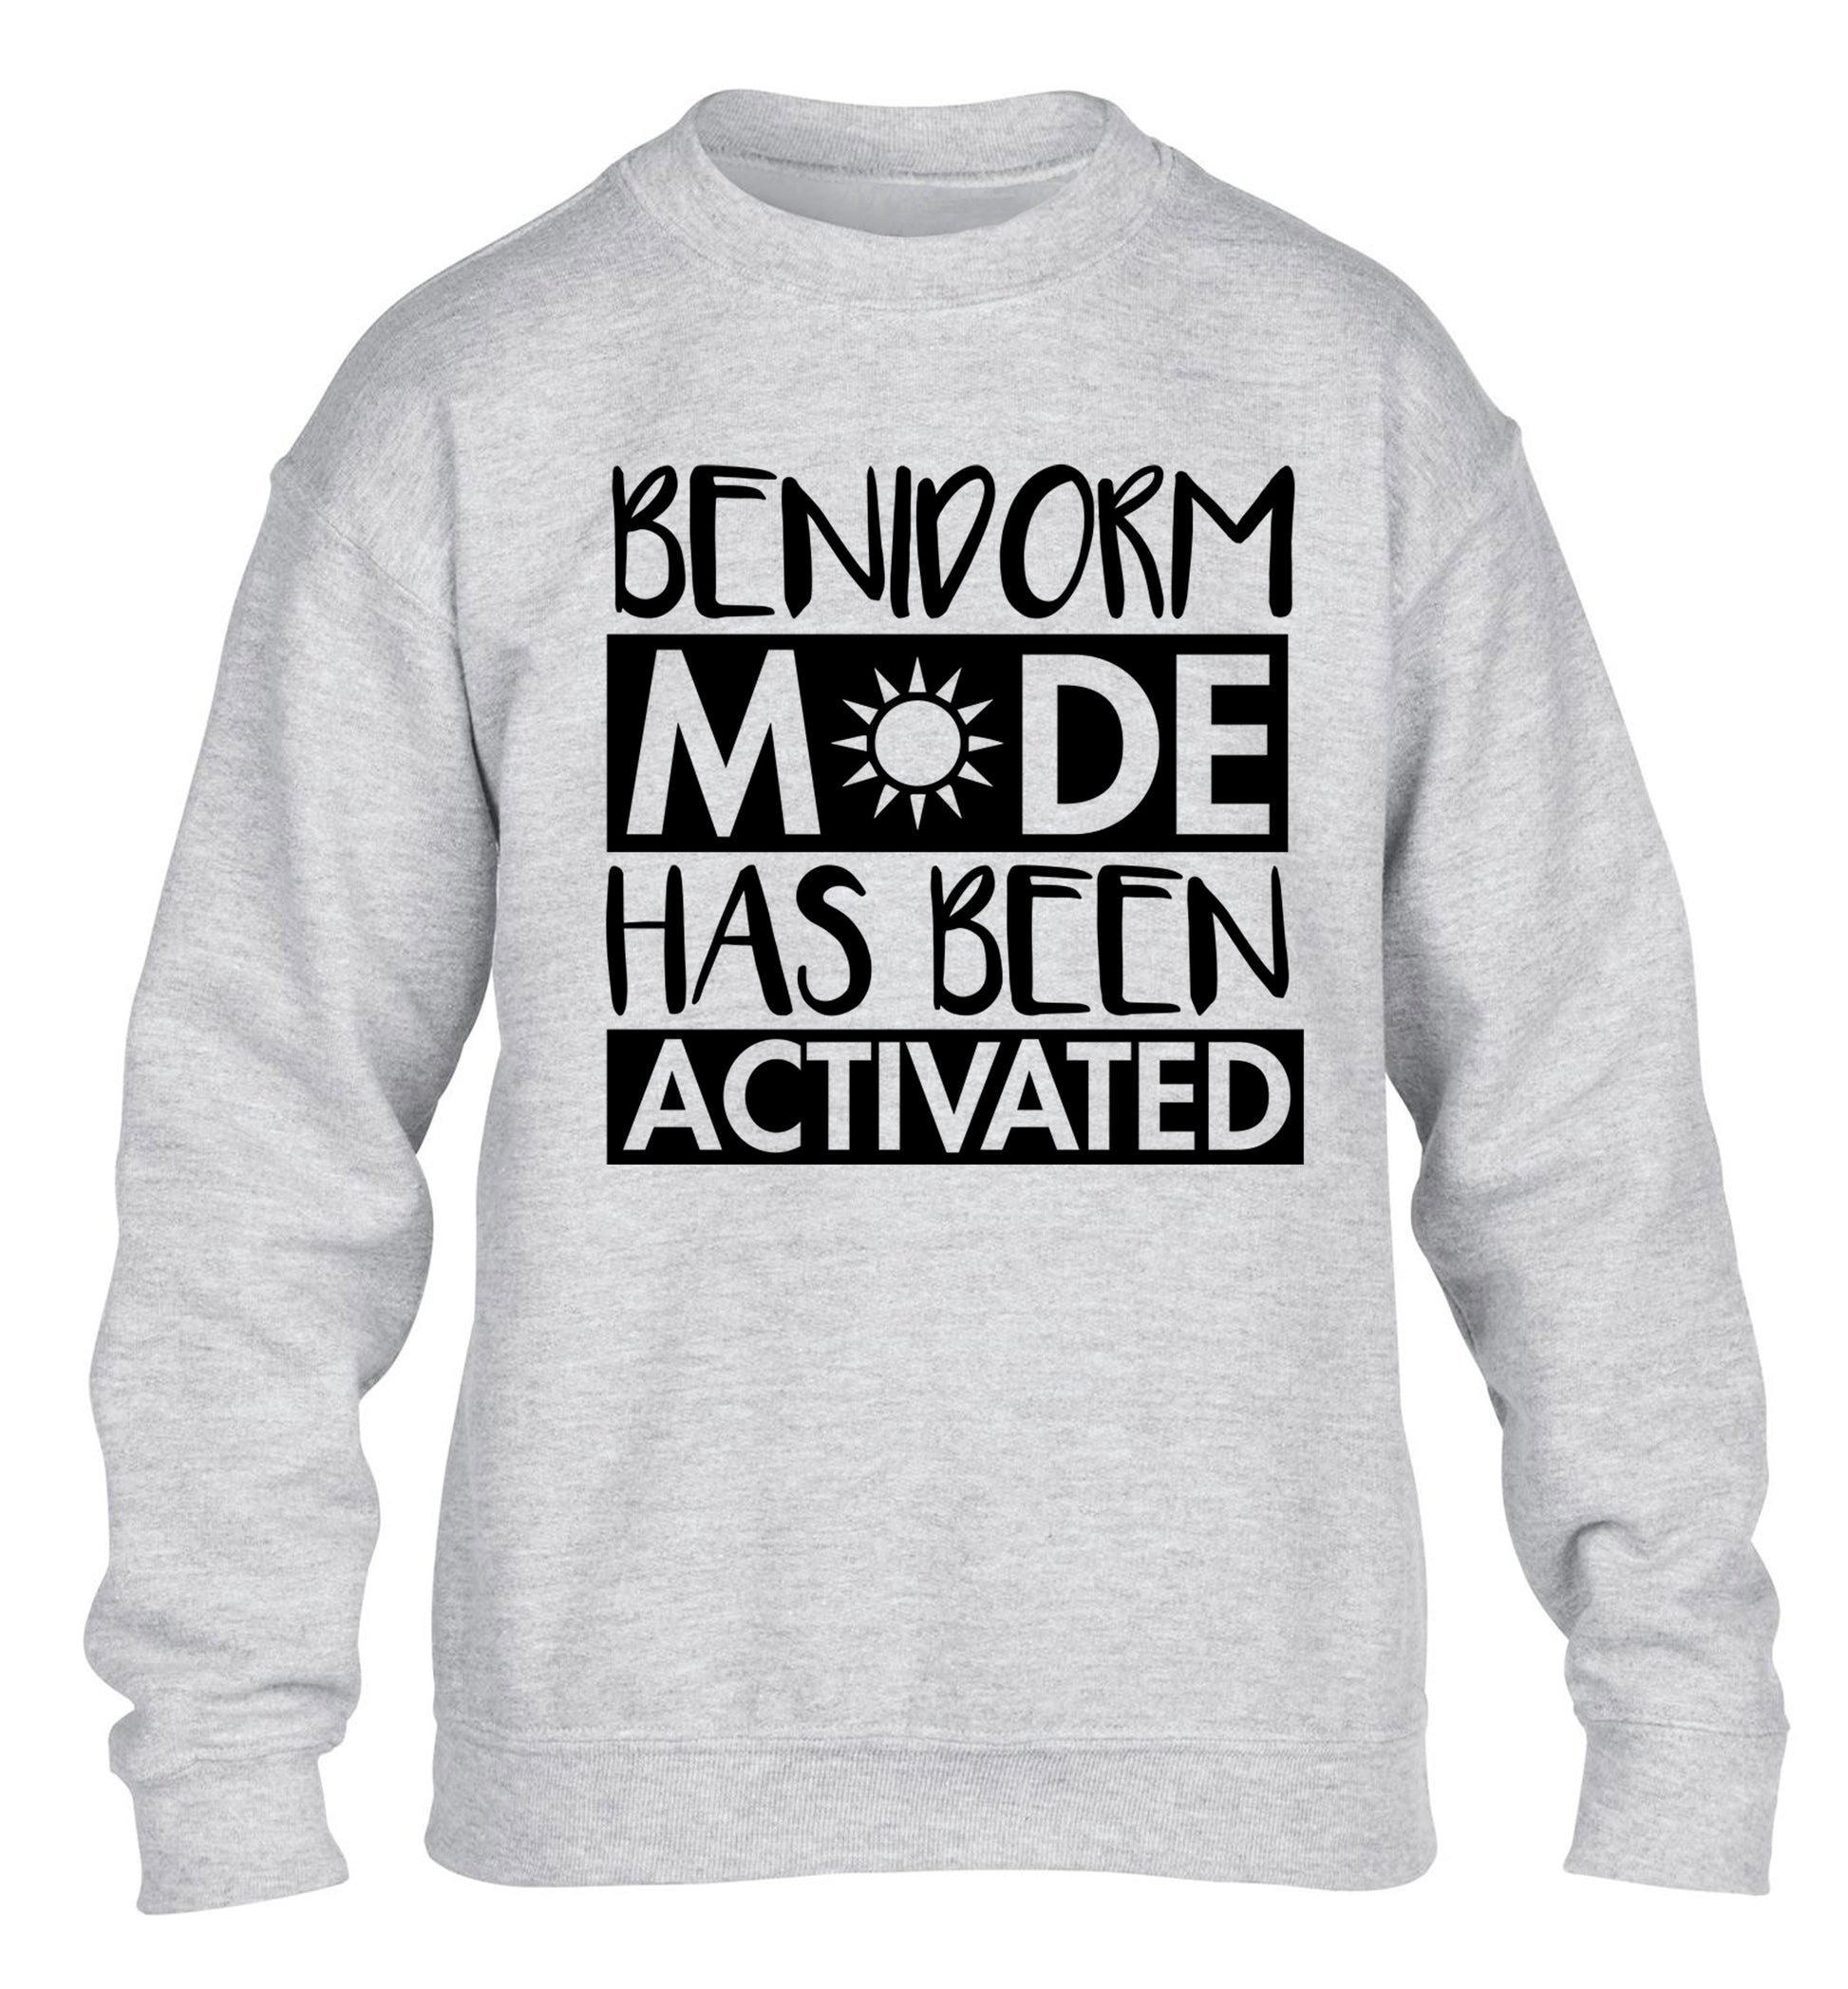 Benidorm mode has been activated children's grey sweater 12-14 Years